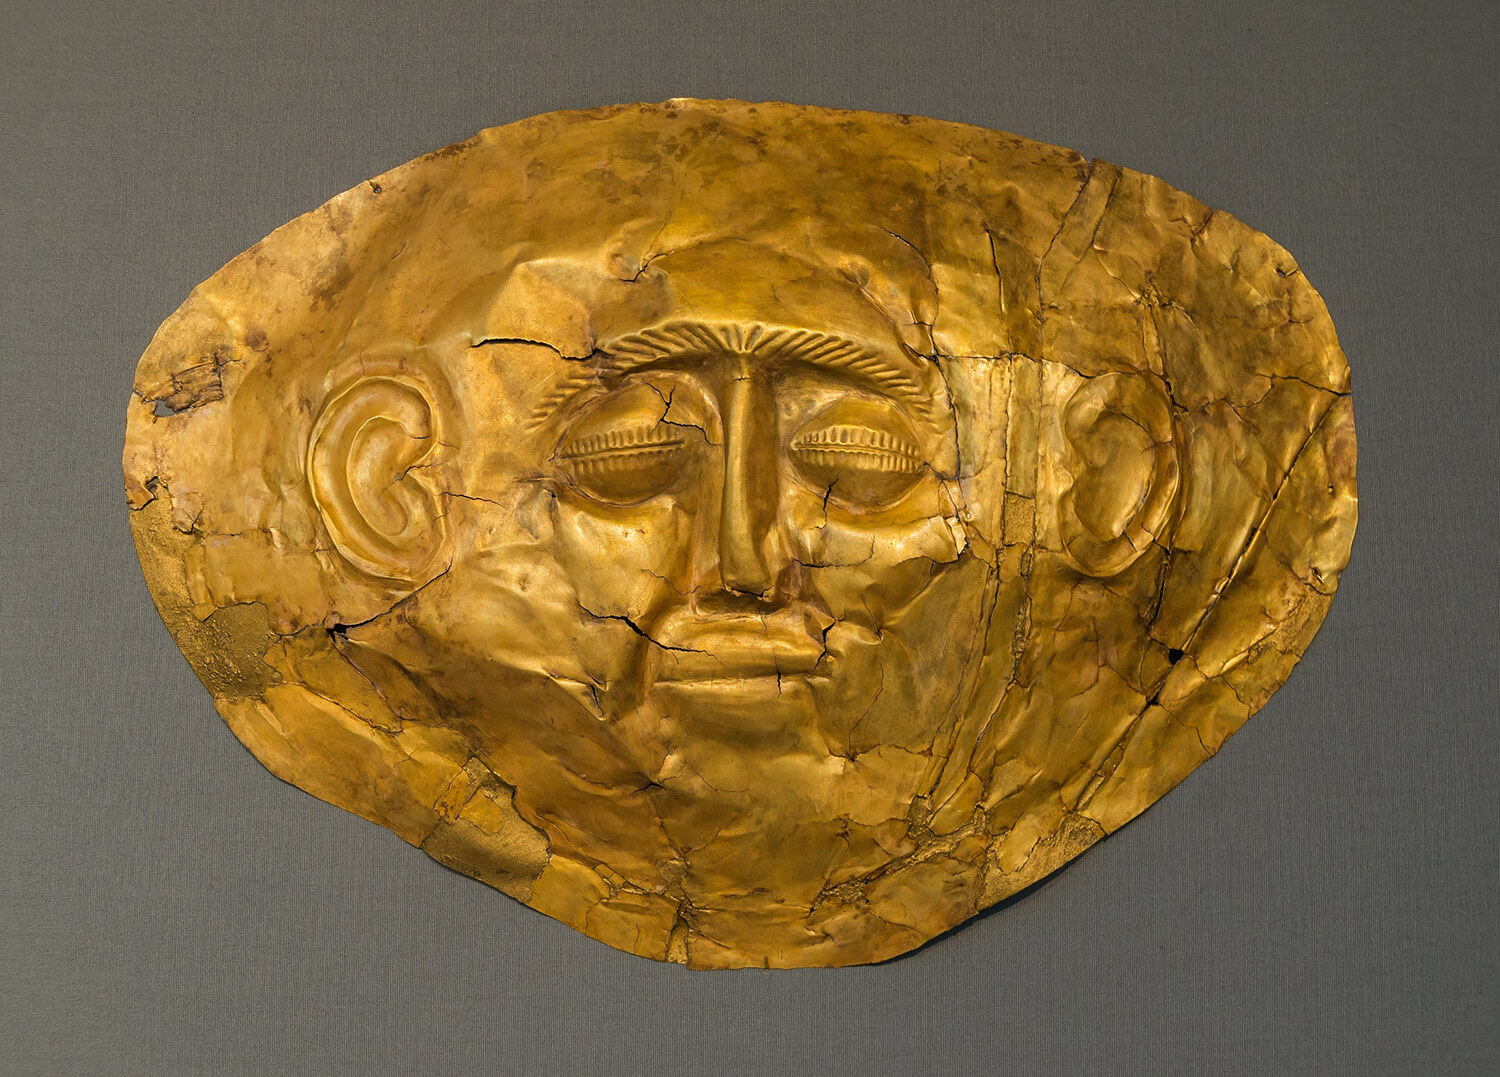 A golden funerary mask